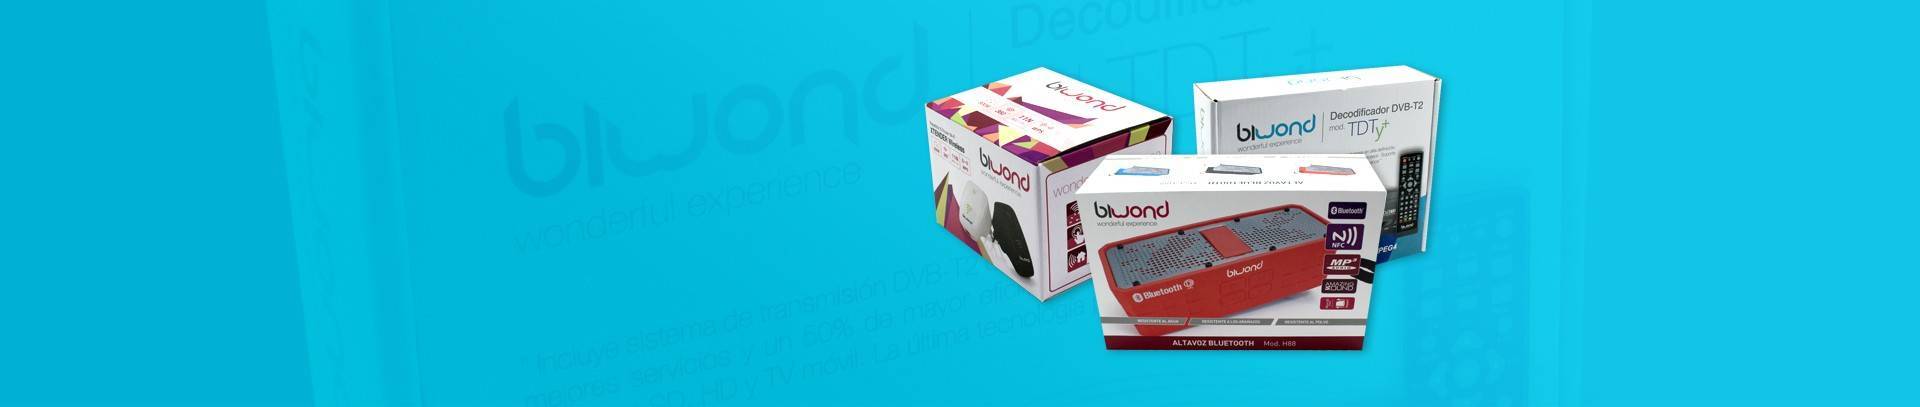 Biwond, packaging para productos de informática